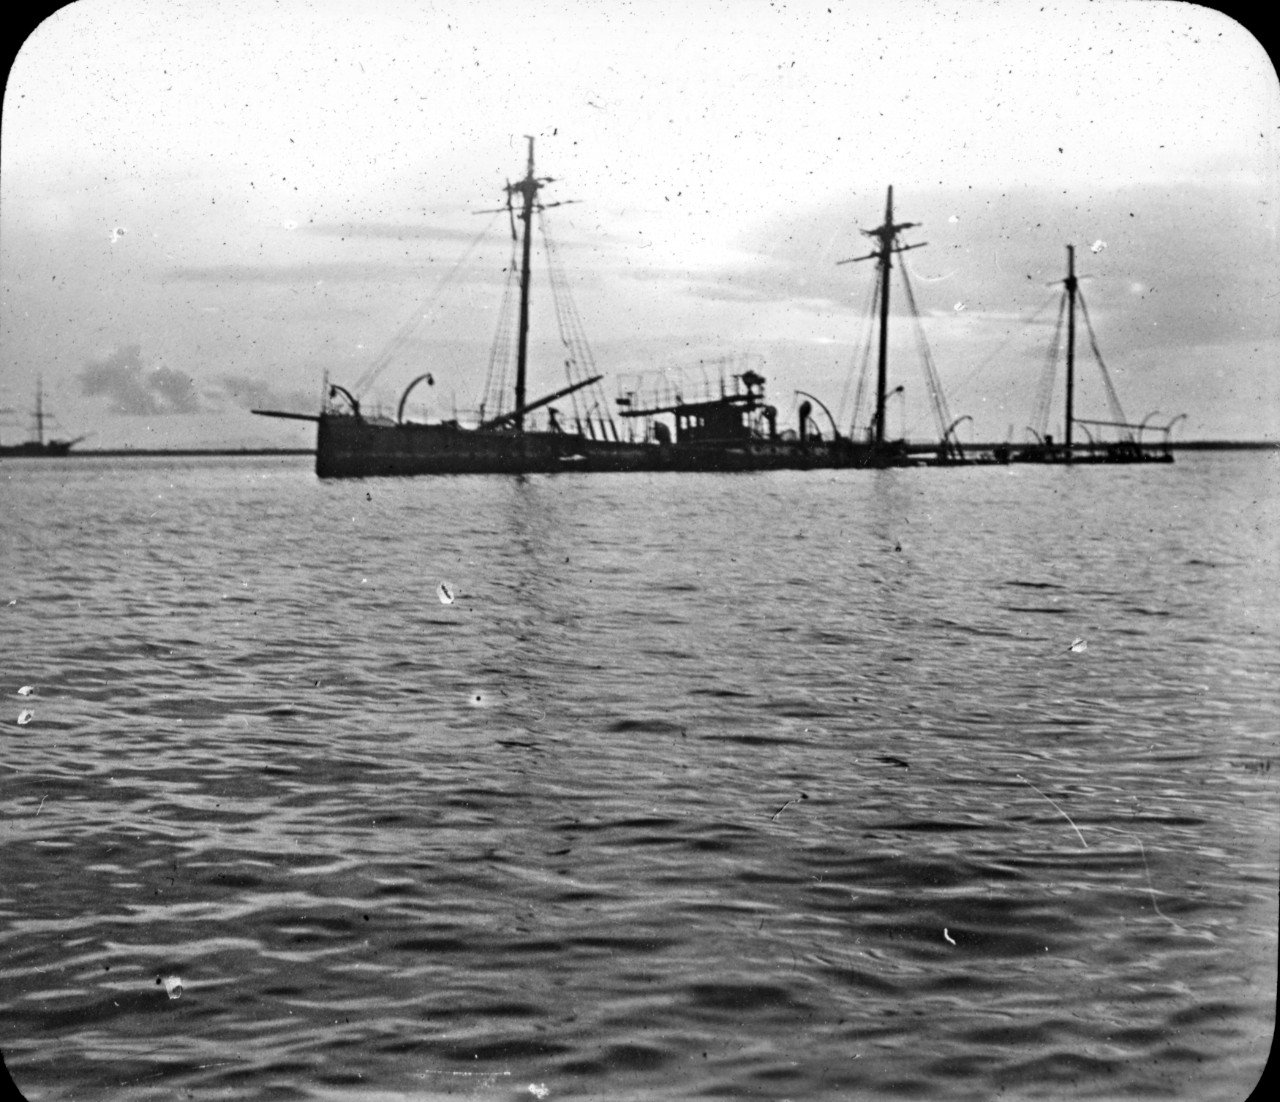 Wreck of Spanish cruiser Don Antonio de Ulloa